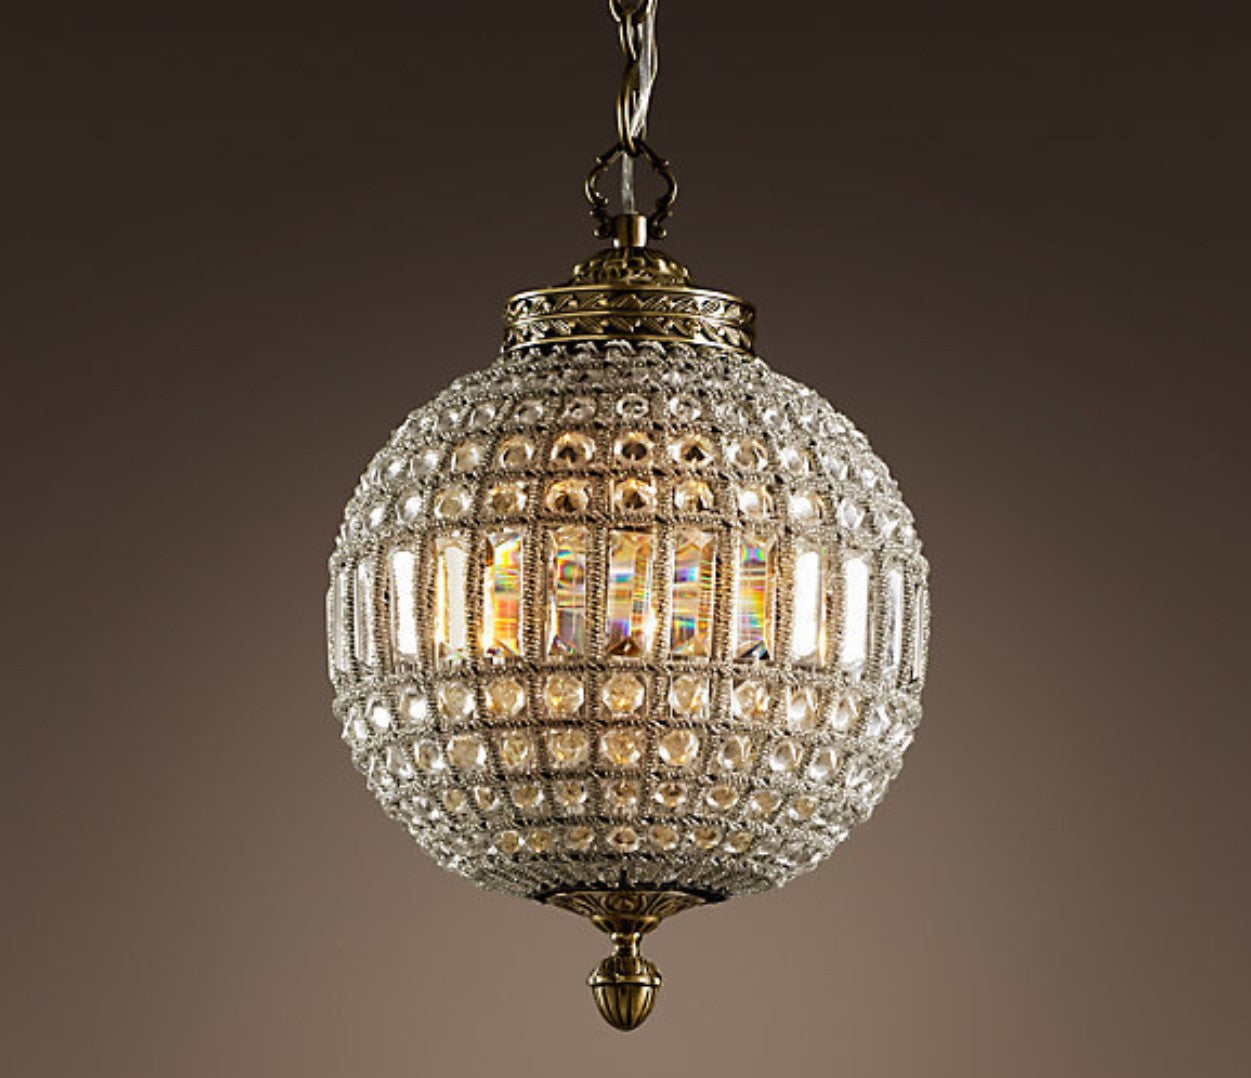 Antique Brass Crystal Globe Chandelier